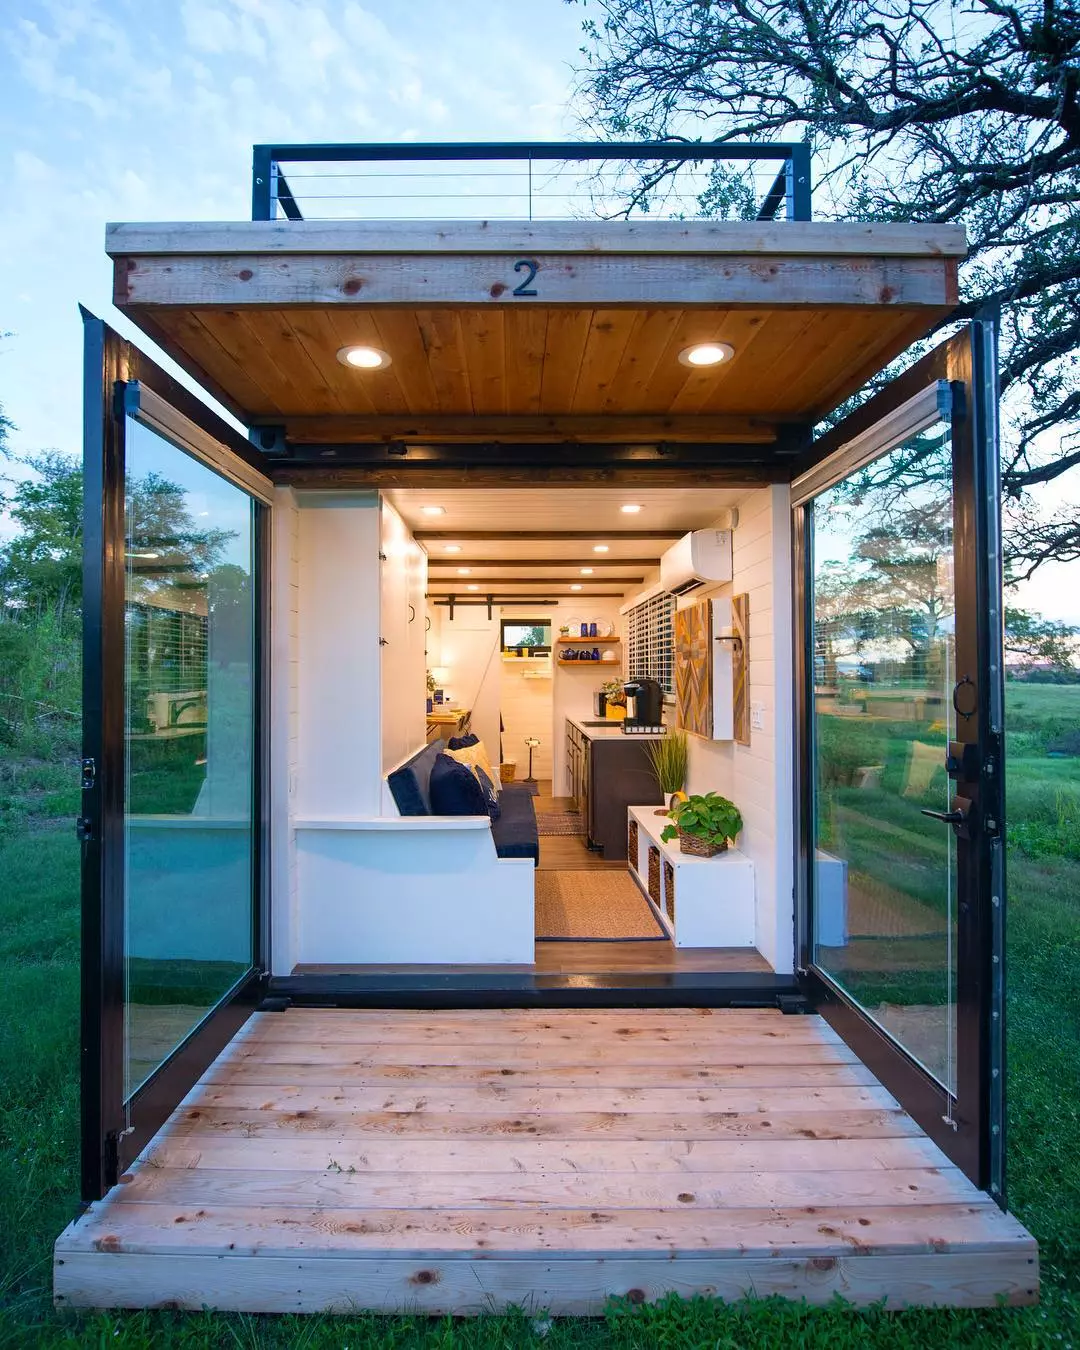 https://www.extraspace.com/blog/wp-content/uploads/2019/11/tiny-porch-design-tiny-homes.jpg.webp